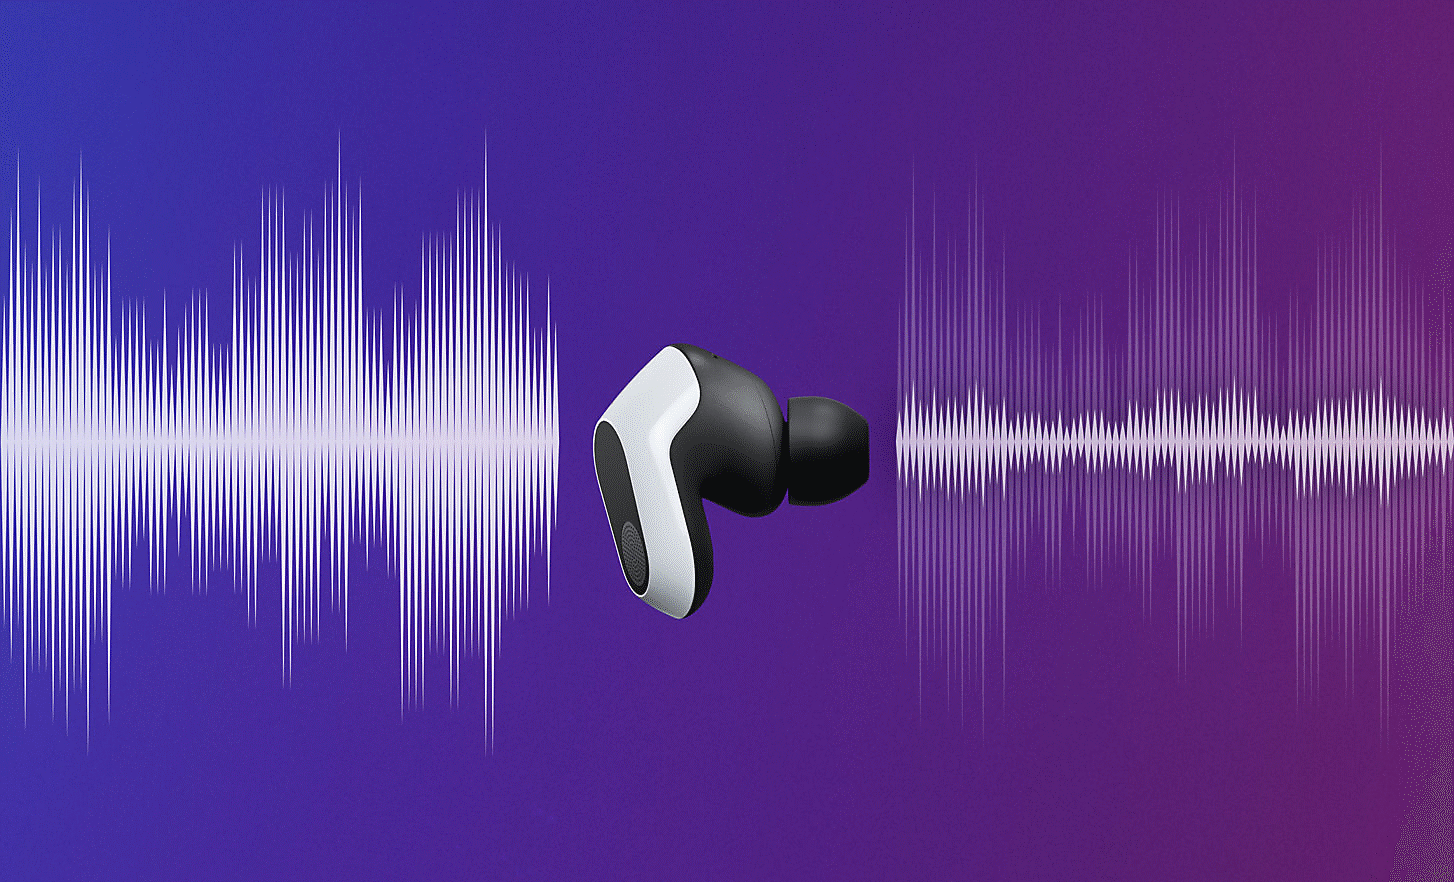 Image des ondes sonores reçues et émises par un écouteur INZONE